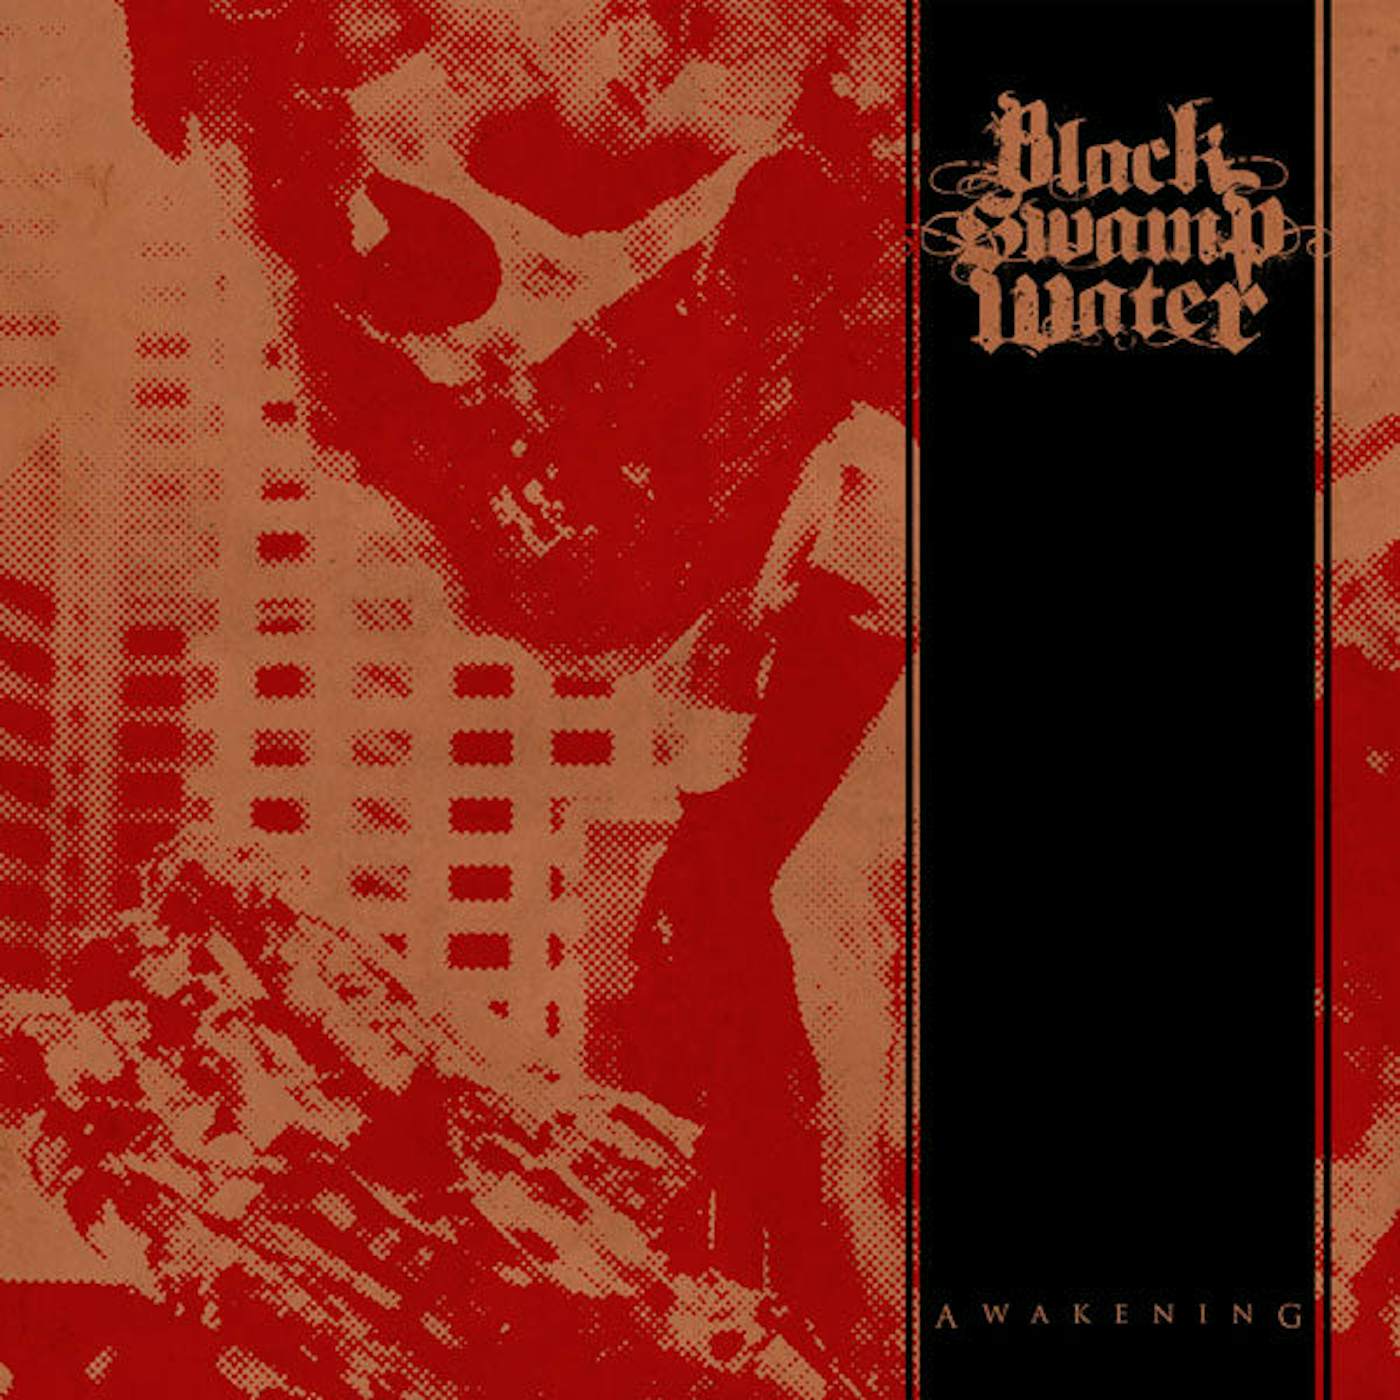 Black Swamp Water LP - Awakening (Vinyl)